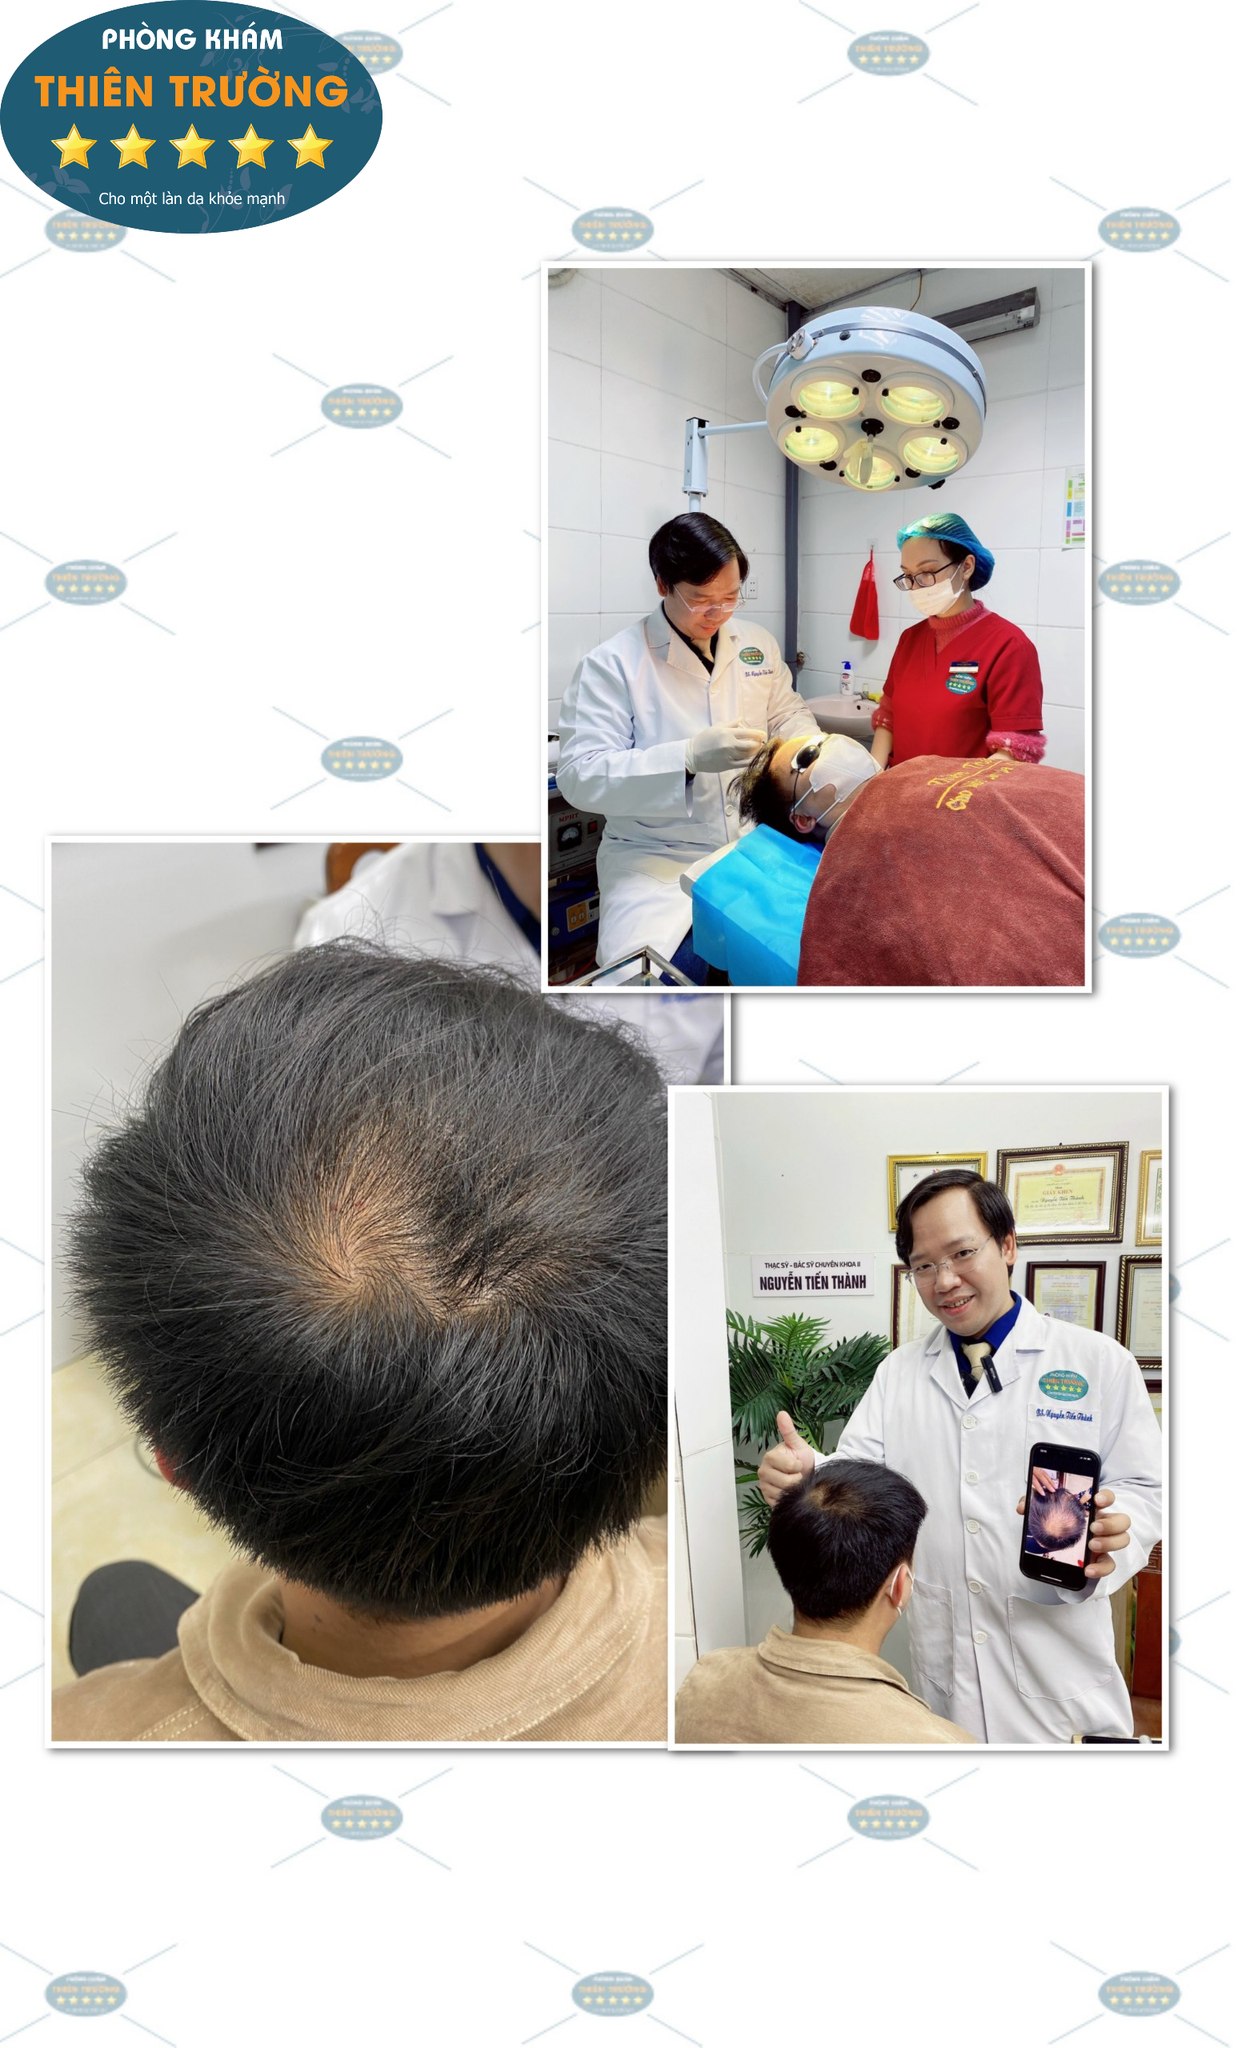 Hình ảnh: Thạc sĩ- Bác sĩ CK II Nguyễn Tiến Thành đang hỗ trợ điều trị rụng tóc cho khách hàng.